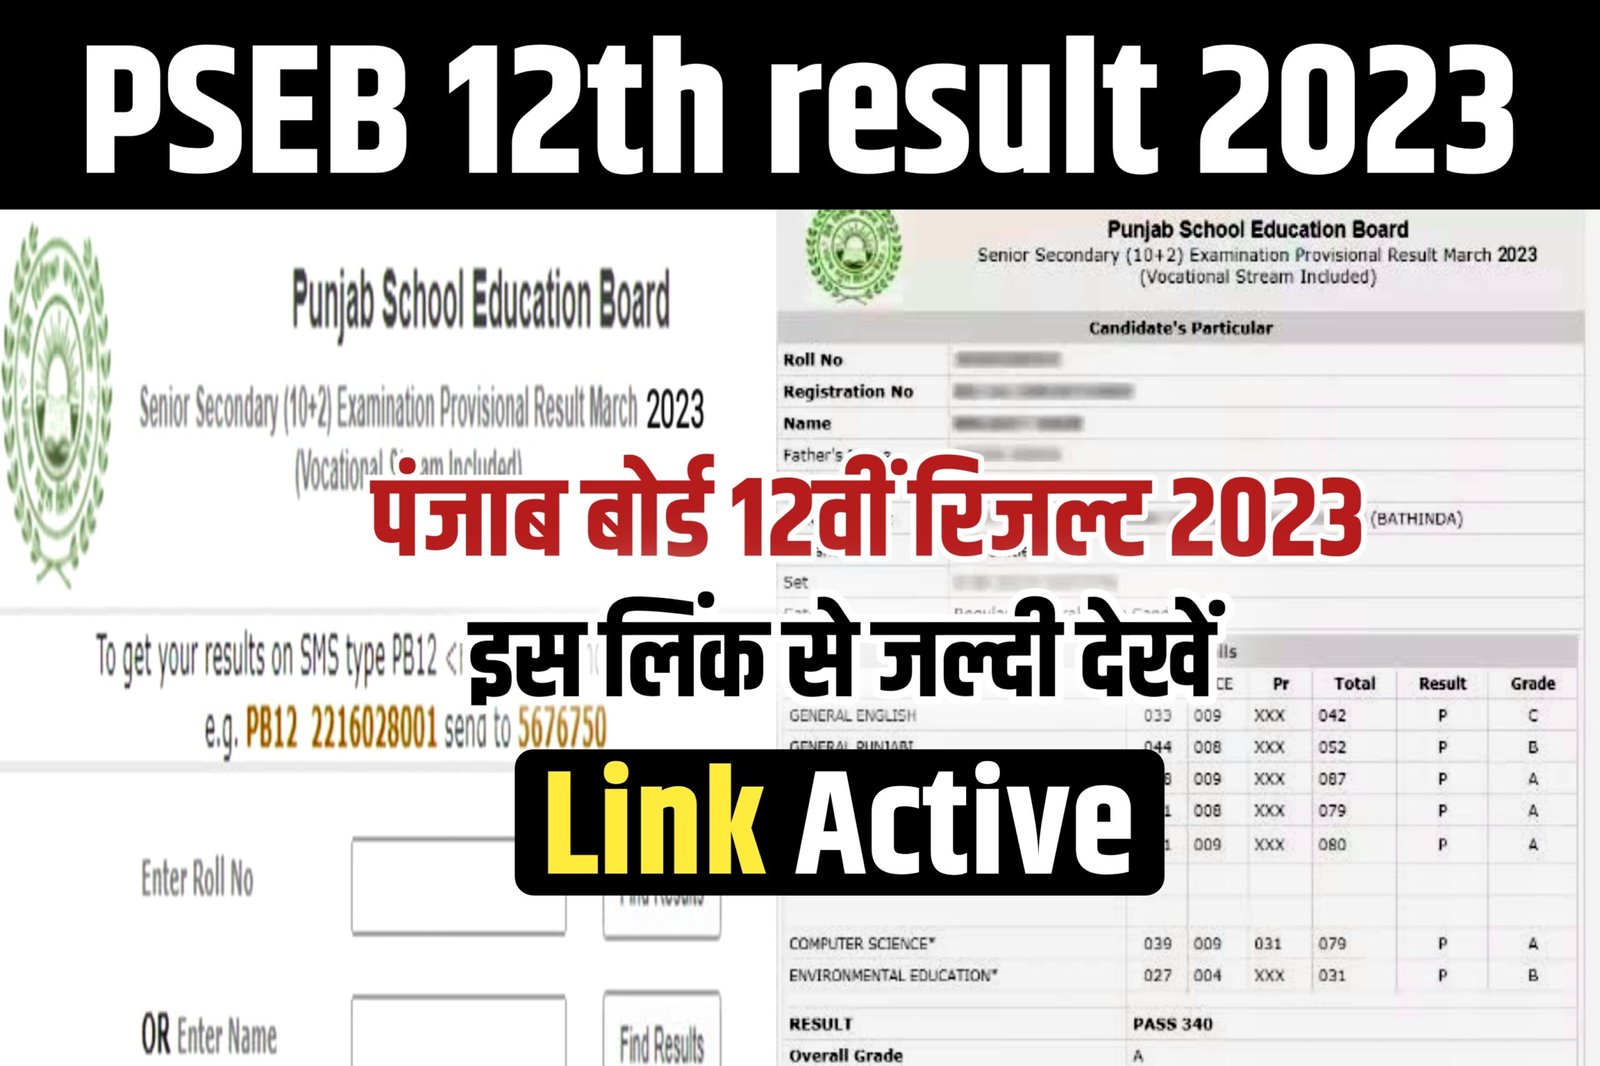 PSEB 12th Result 2023  pseb.ac.in 12th result 2023 - PSEB